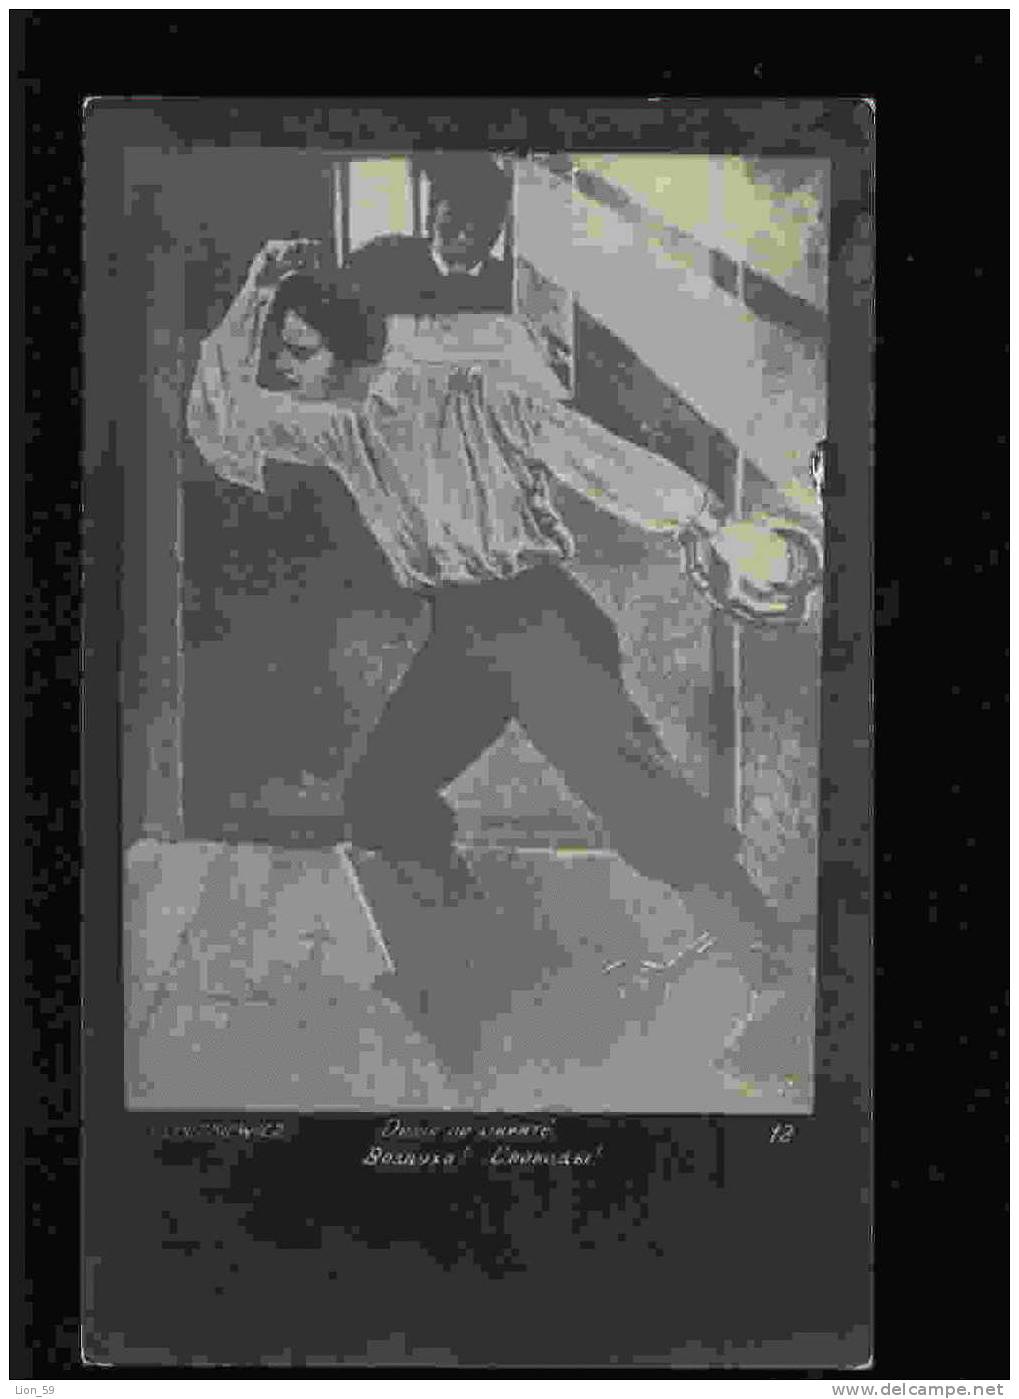 Art CLECZHIEWICZ - DESIRE OF FREEDOM , MAN PRISONER Pc Publisher:RUSSIA Series - # 12 /1910s - Gefängnis & Insassen